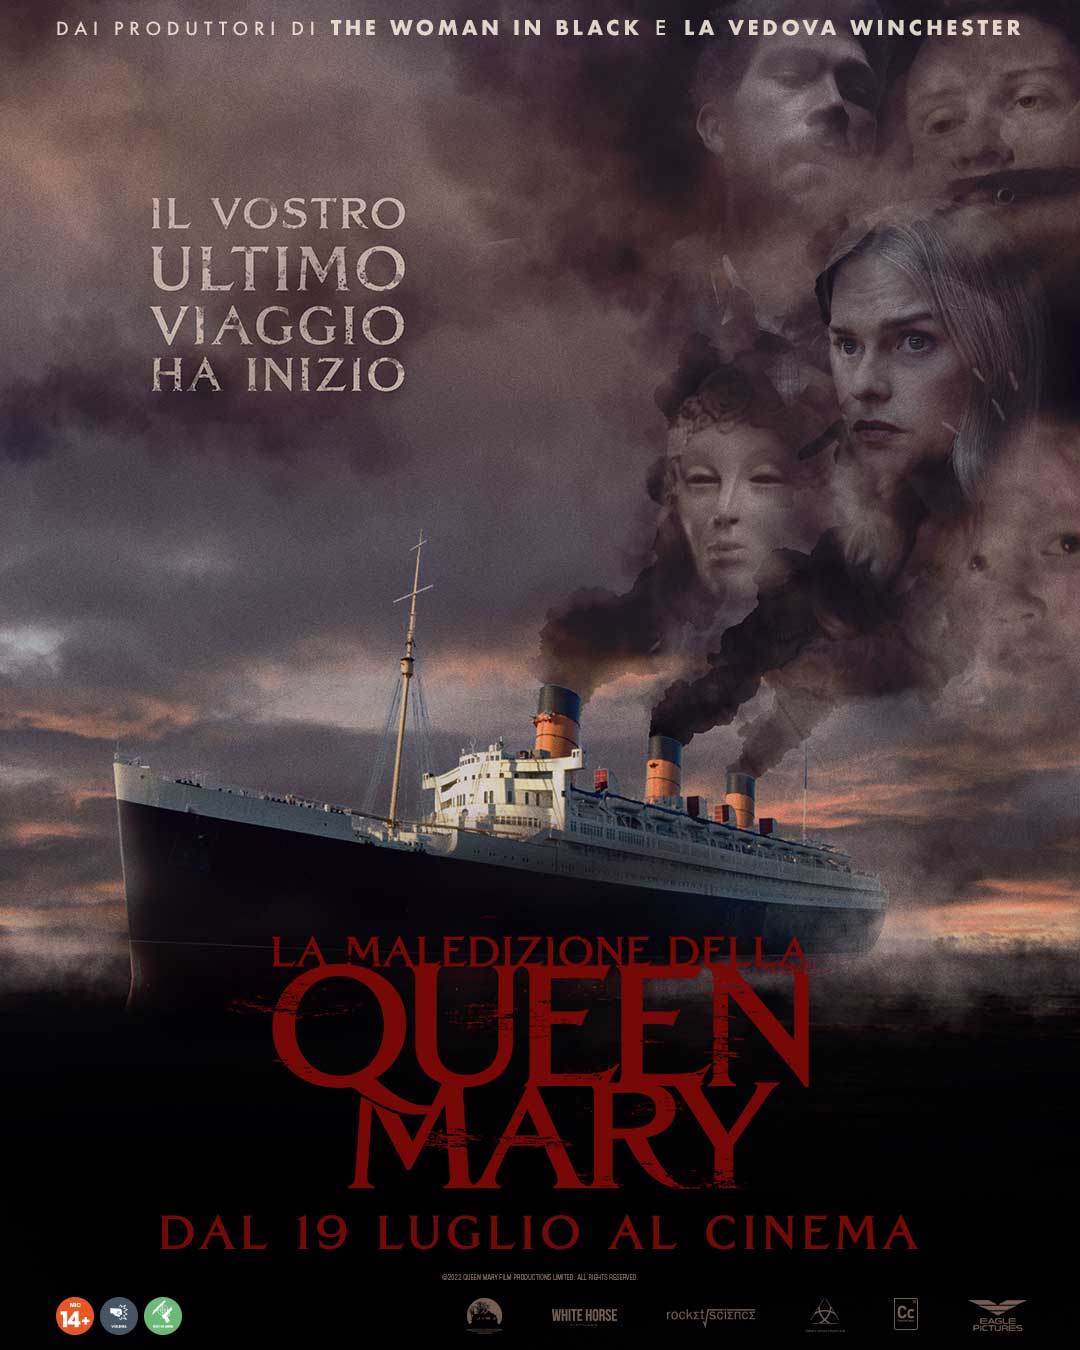 La maledizione della queen mary poster